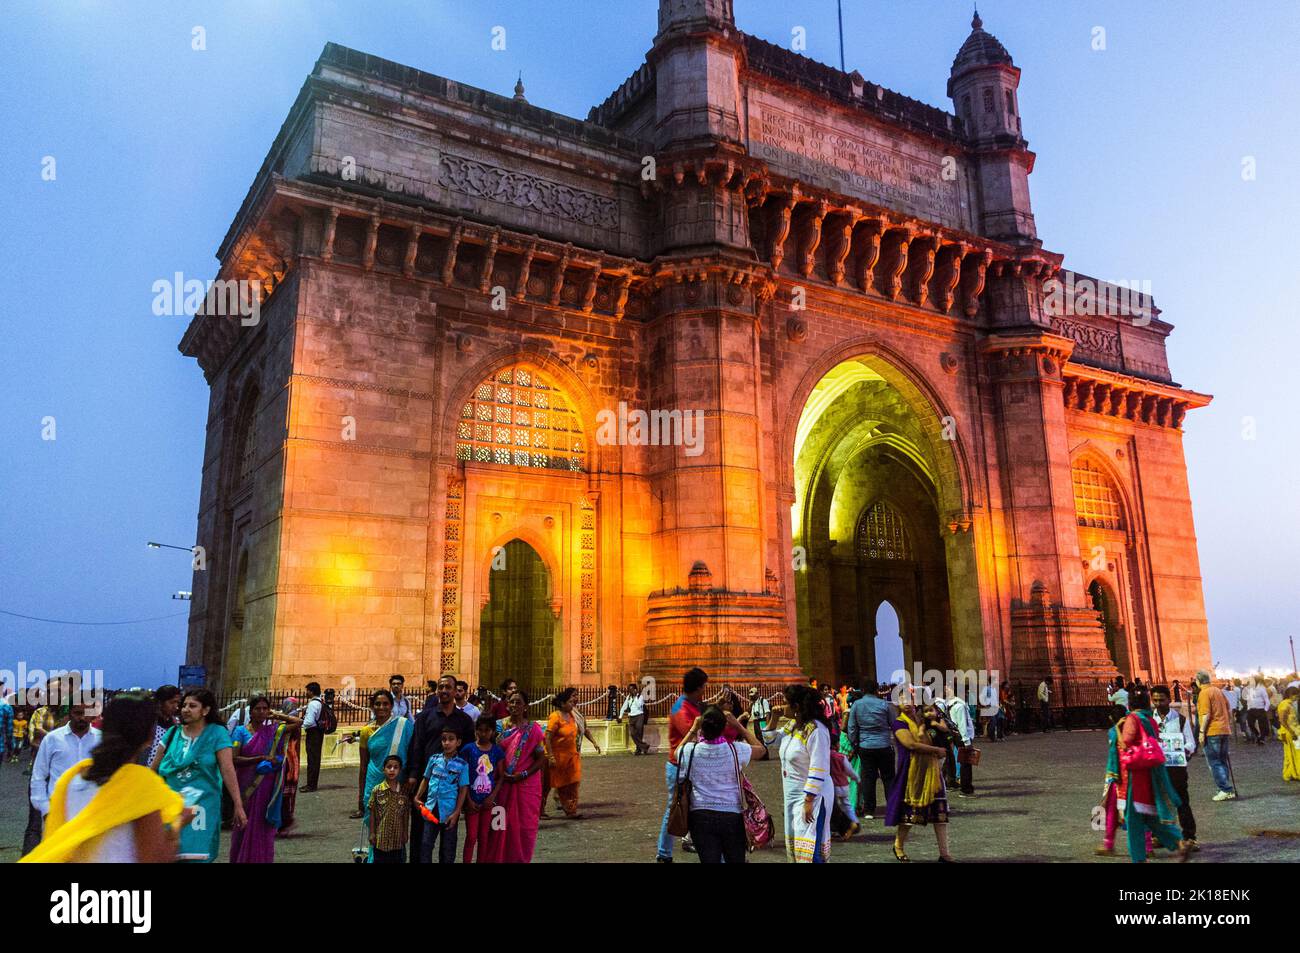 Mumbai, Maharashtra, India : People gather at dusk around the illuminated Gateway of India monumental arch built betwen 1913 and 1924 in the Indo-Sara Stock Photo